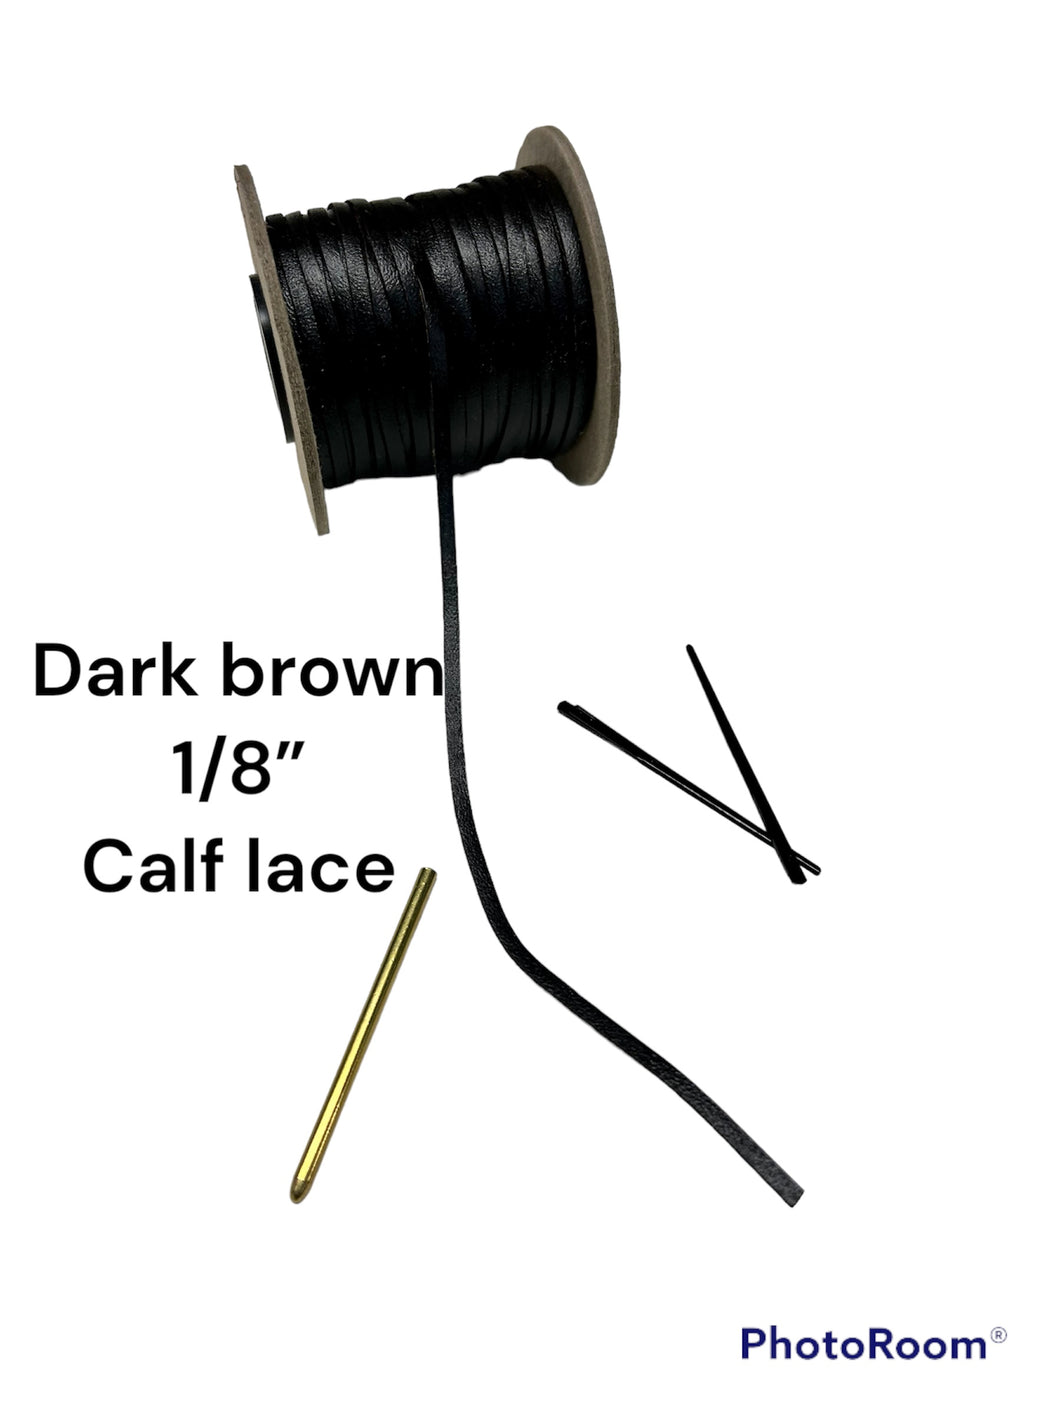 Dark brown 1/8” Calf lace